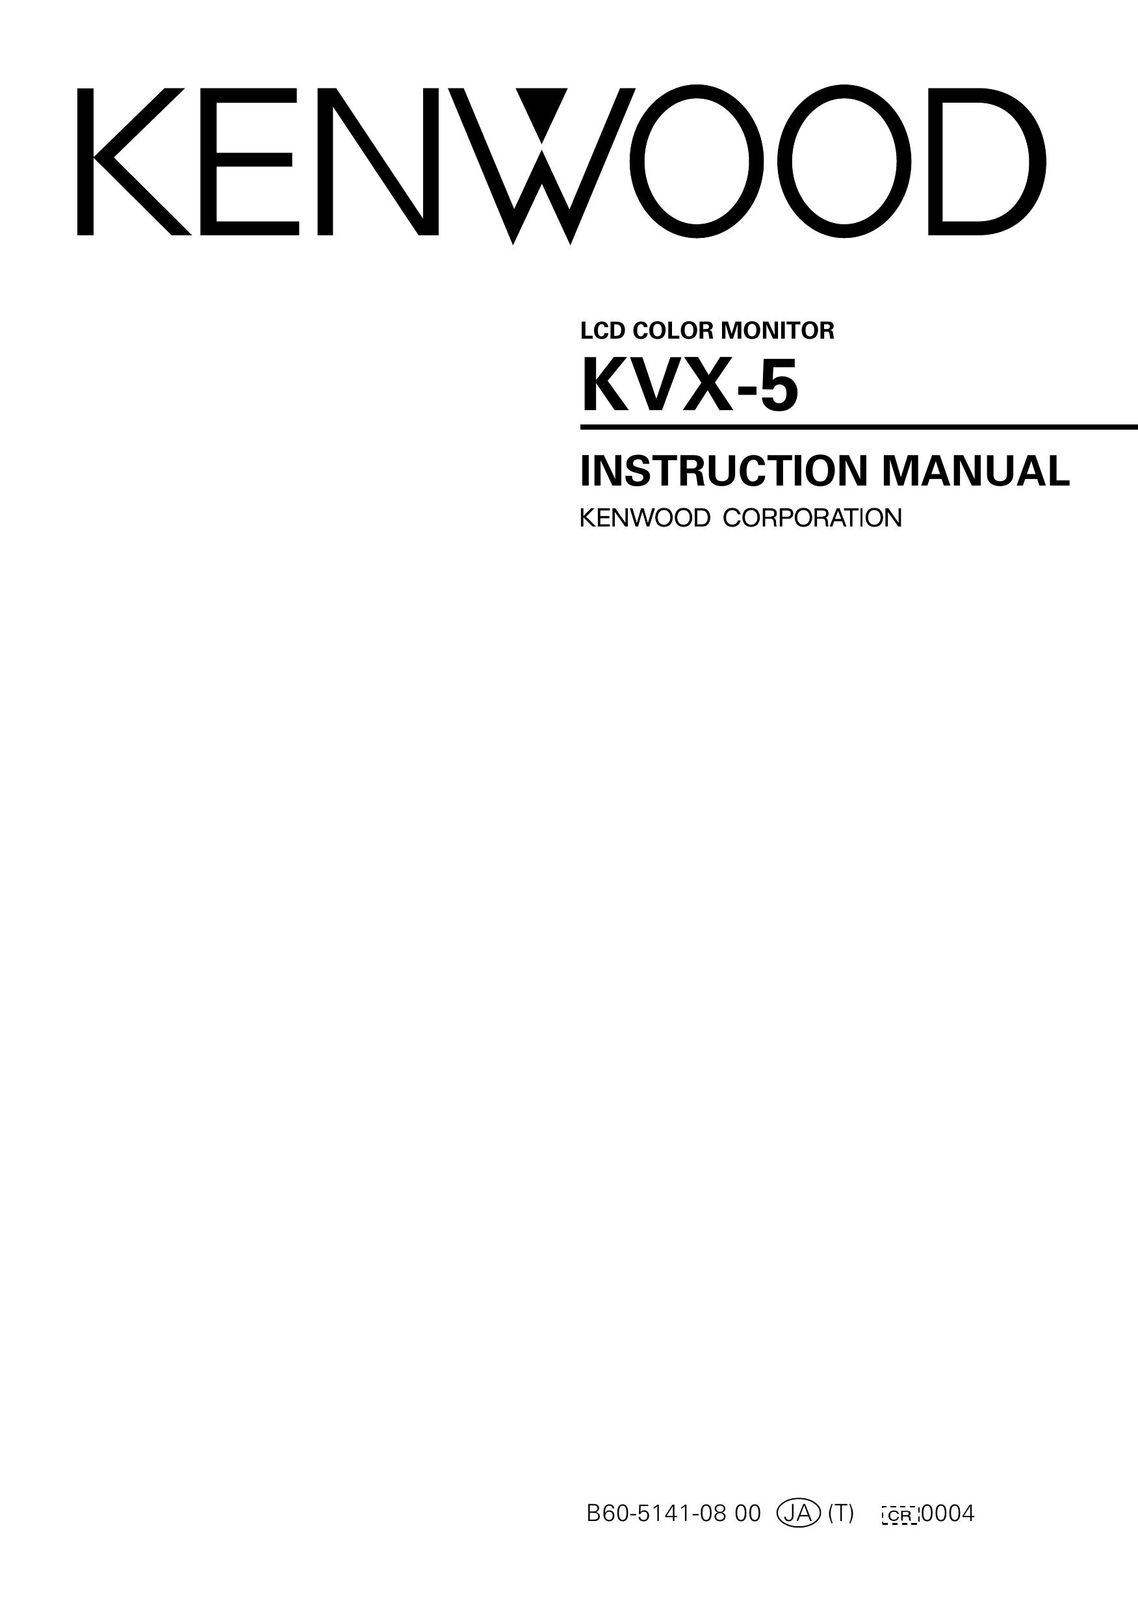 Kenwood KVX-5 Flat Panel Television User Manual